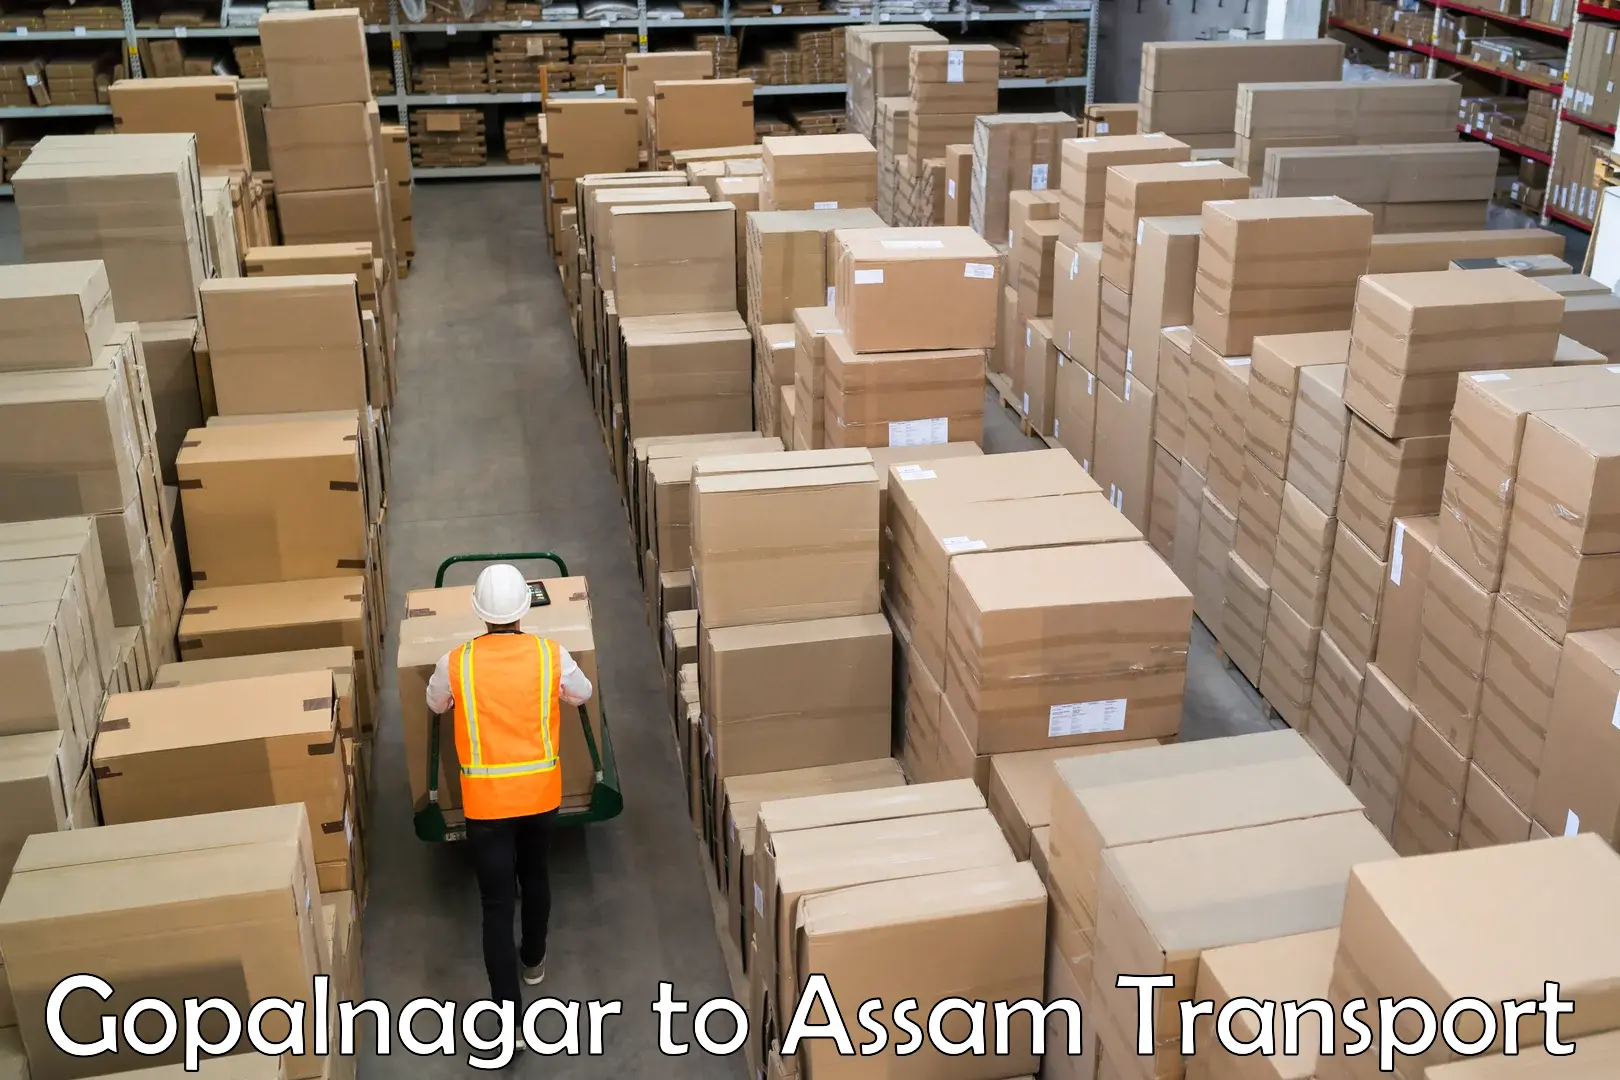 Sending bike to another city Gopalnagar to Assam